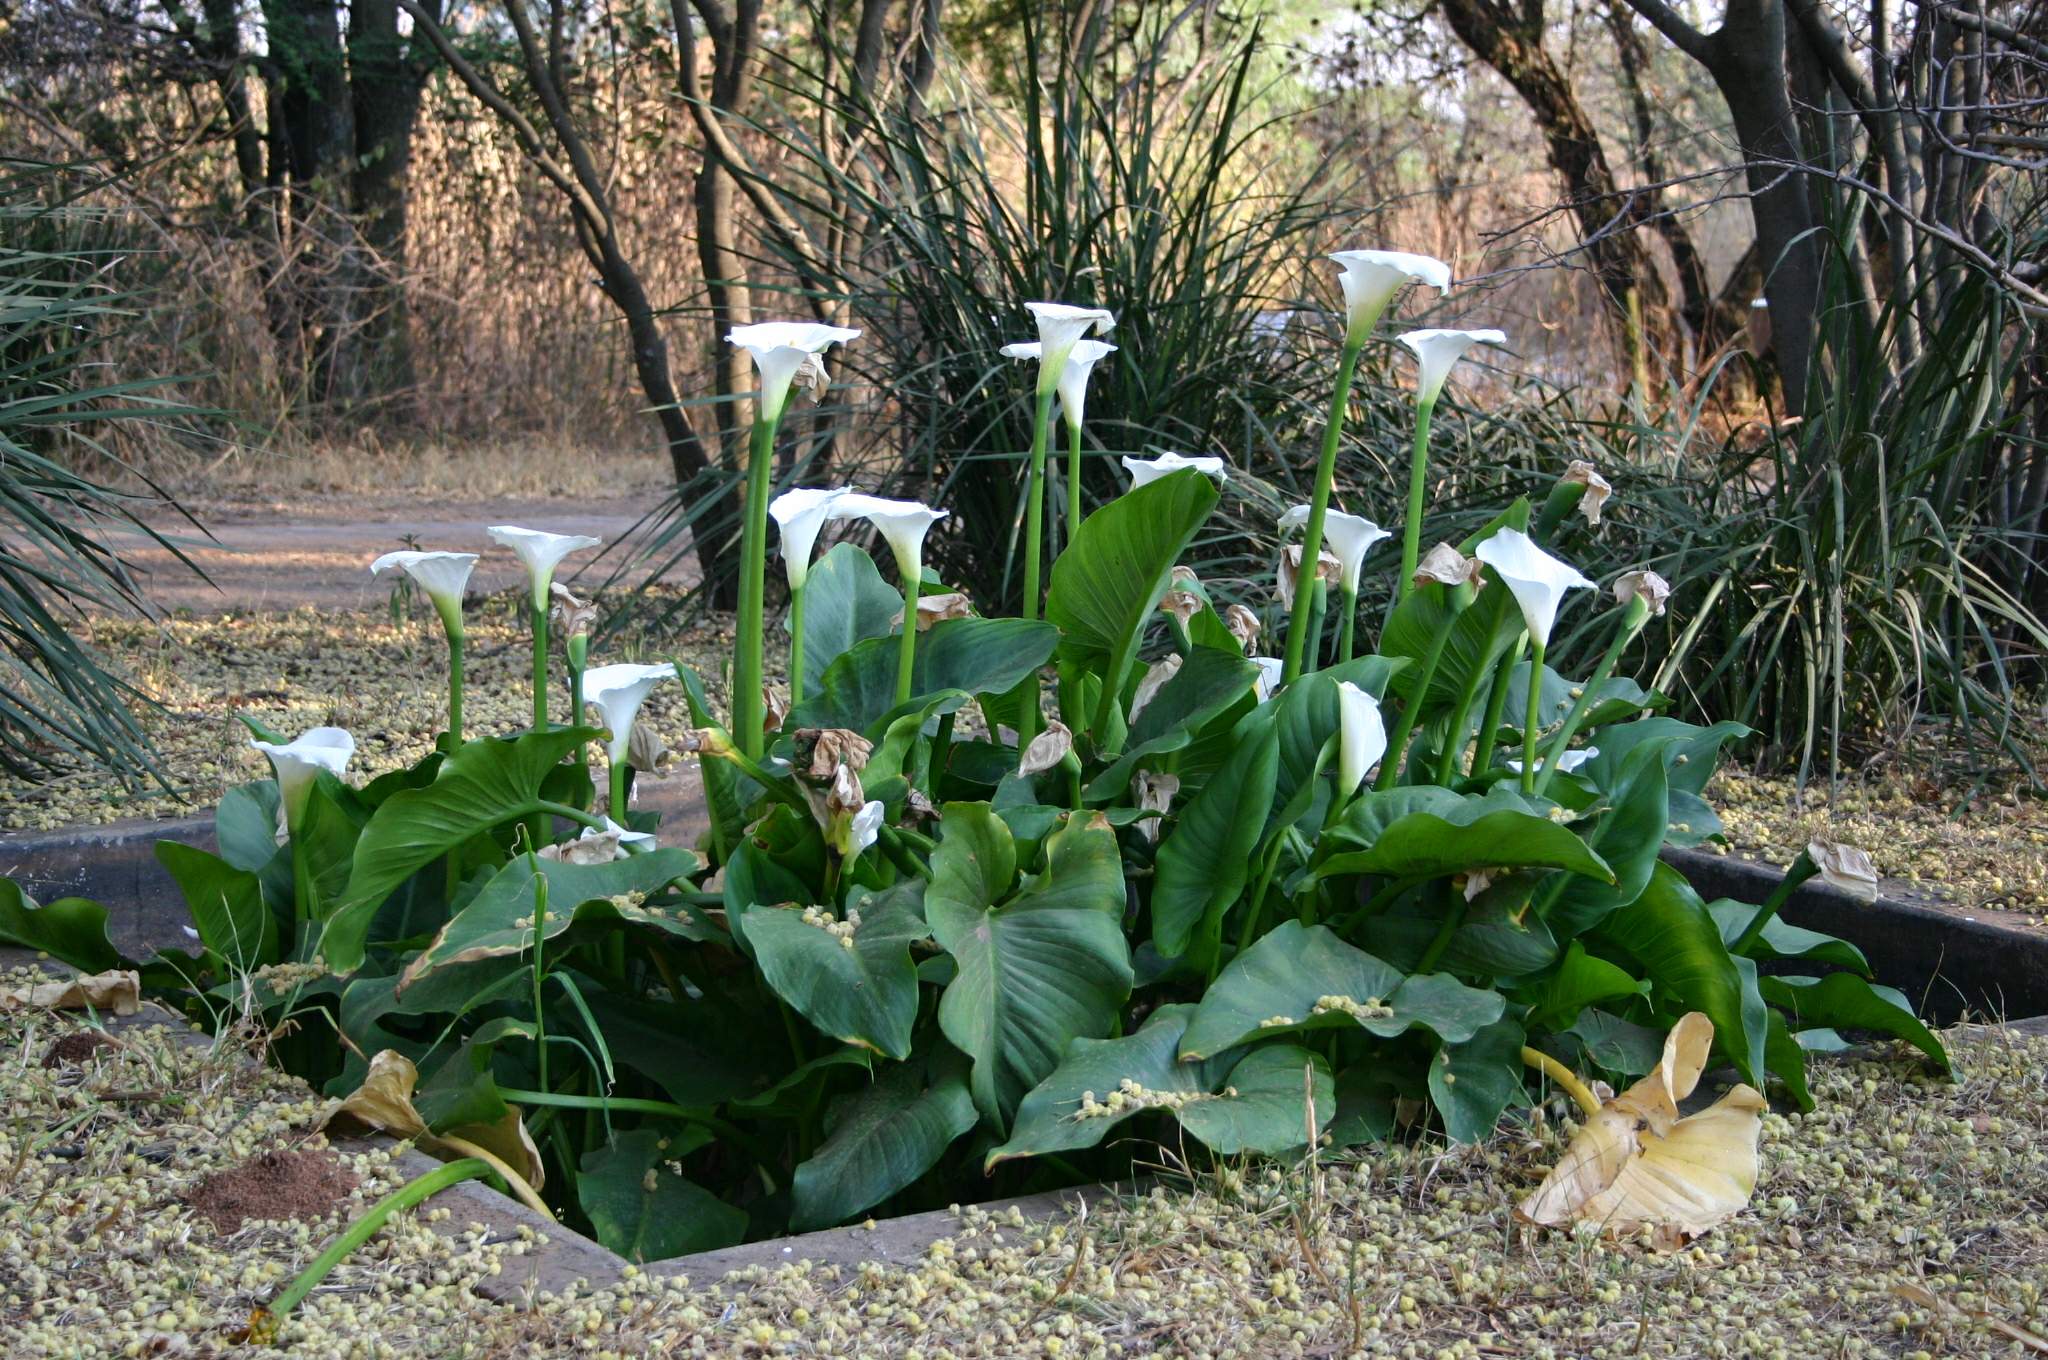 Calas en jardín, una de las plantas de la familia Araceae más utilizadas por su aspecto y resistencia al frío.